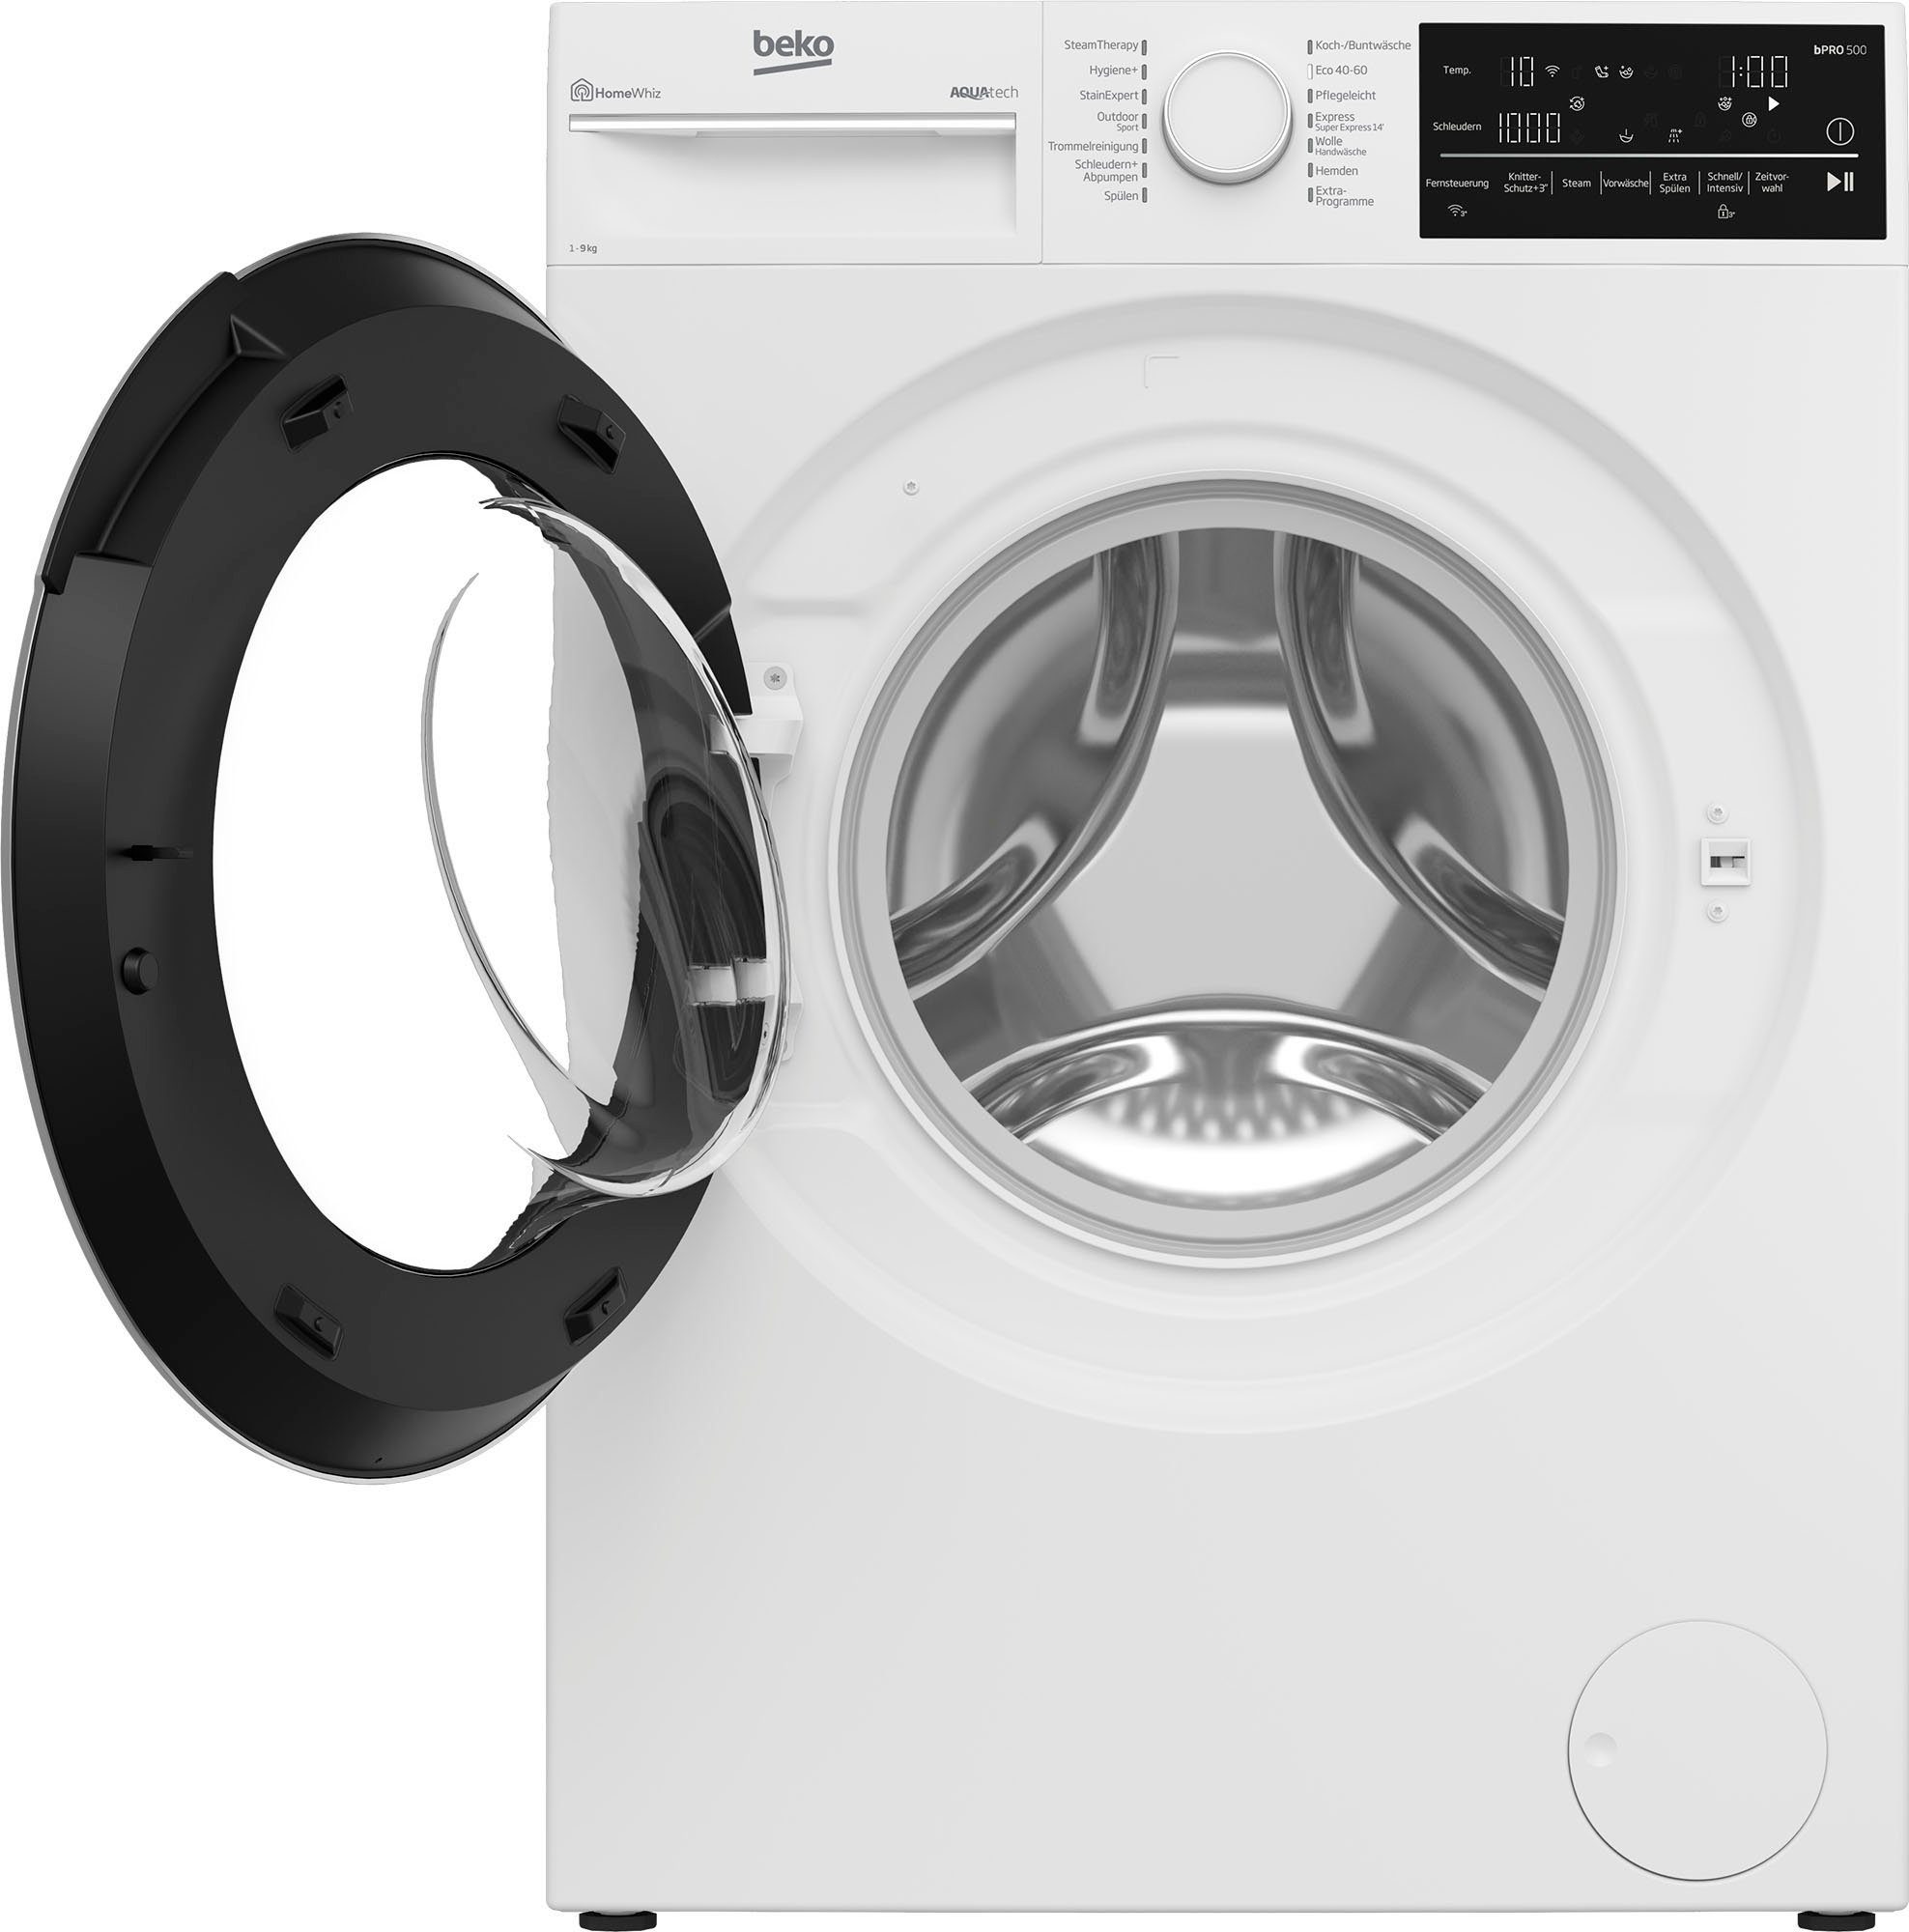 BEKO Waschmaschine B5WFT89418W, 1400 U/min 9 kg